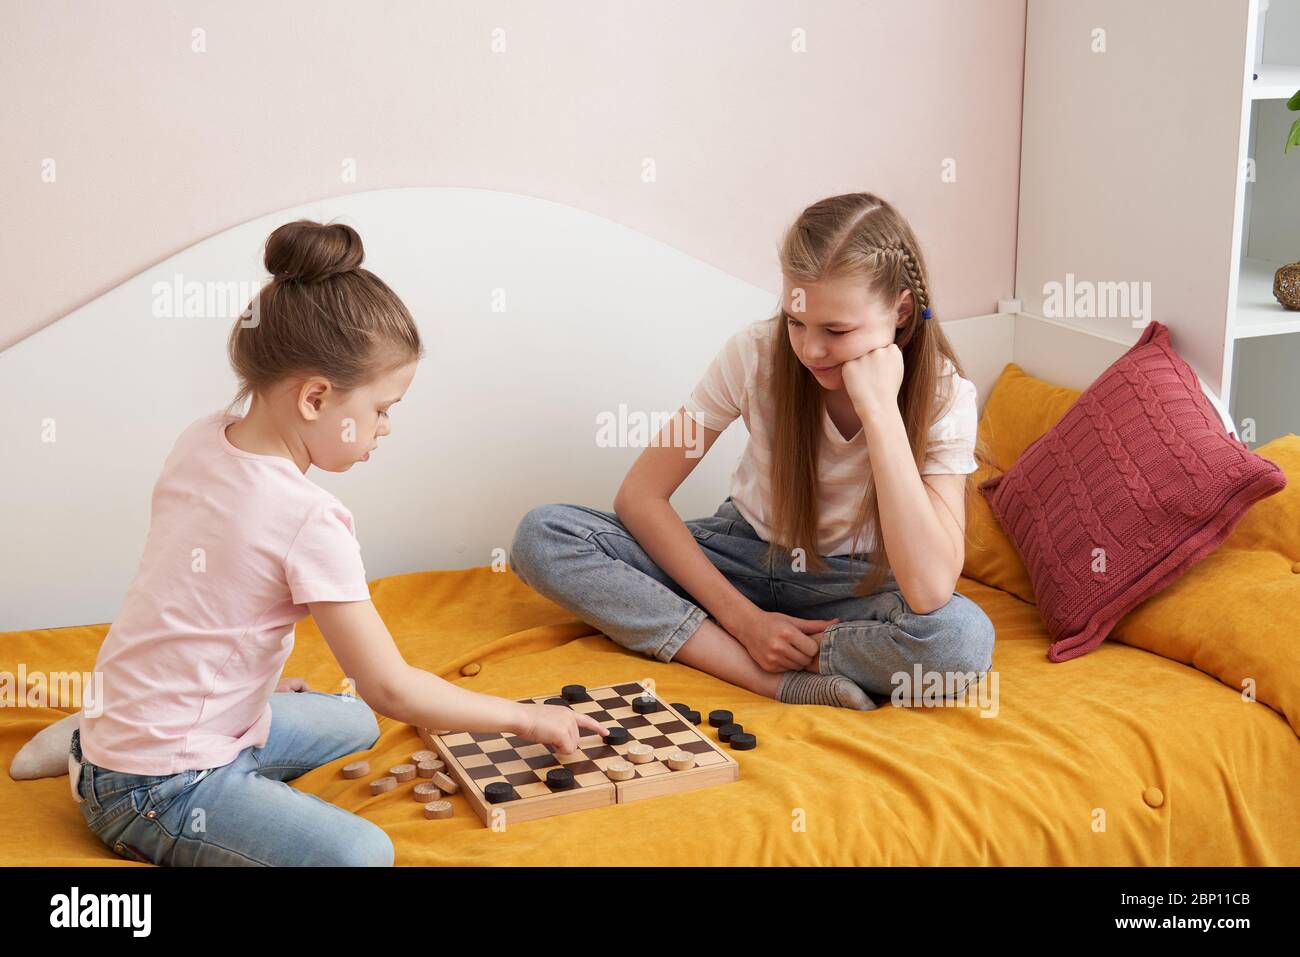 Игра на раздевание сестра брат. Дети 2 сестры играют на раздевание. Две сестры лежа на полу играют в шашки. Во что можно поиграть с сестренкой. Брат с сестрой играли в игру на раздевание а потом потрахались.